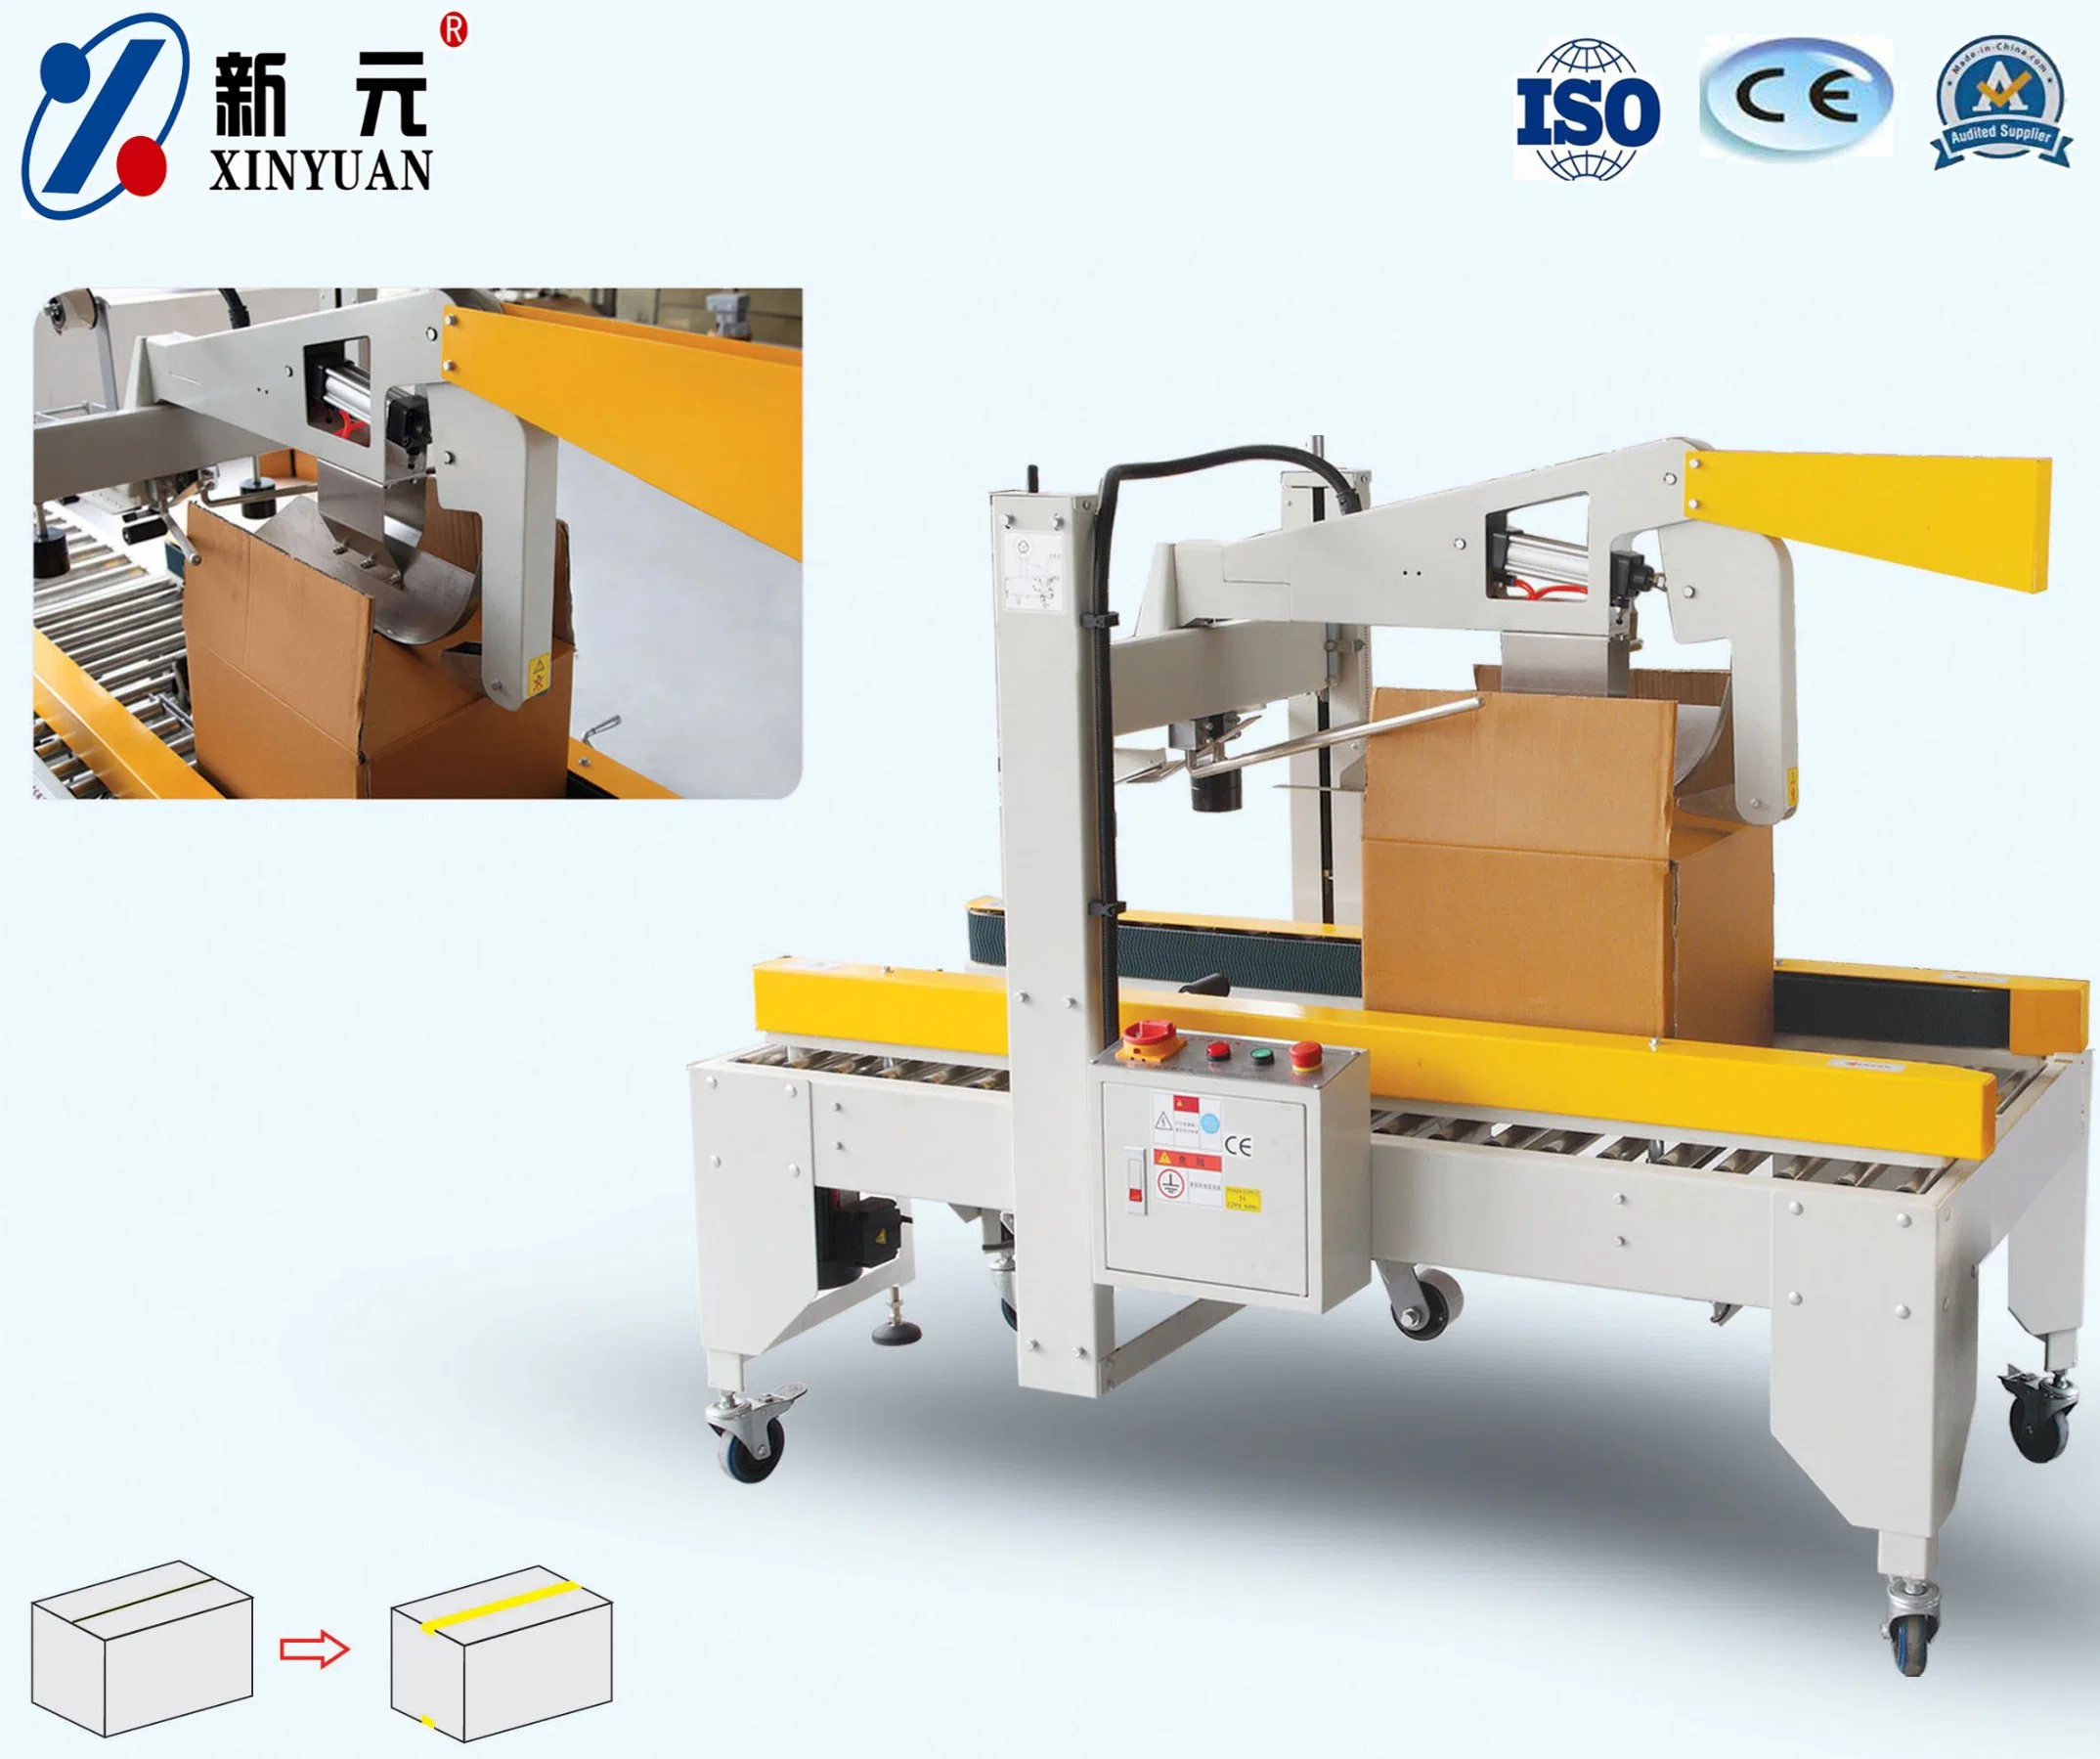 Xinyuan hacer caso de la fábrica de embalaje El embalaje de cartón máquina de sellado